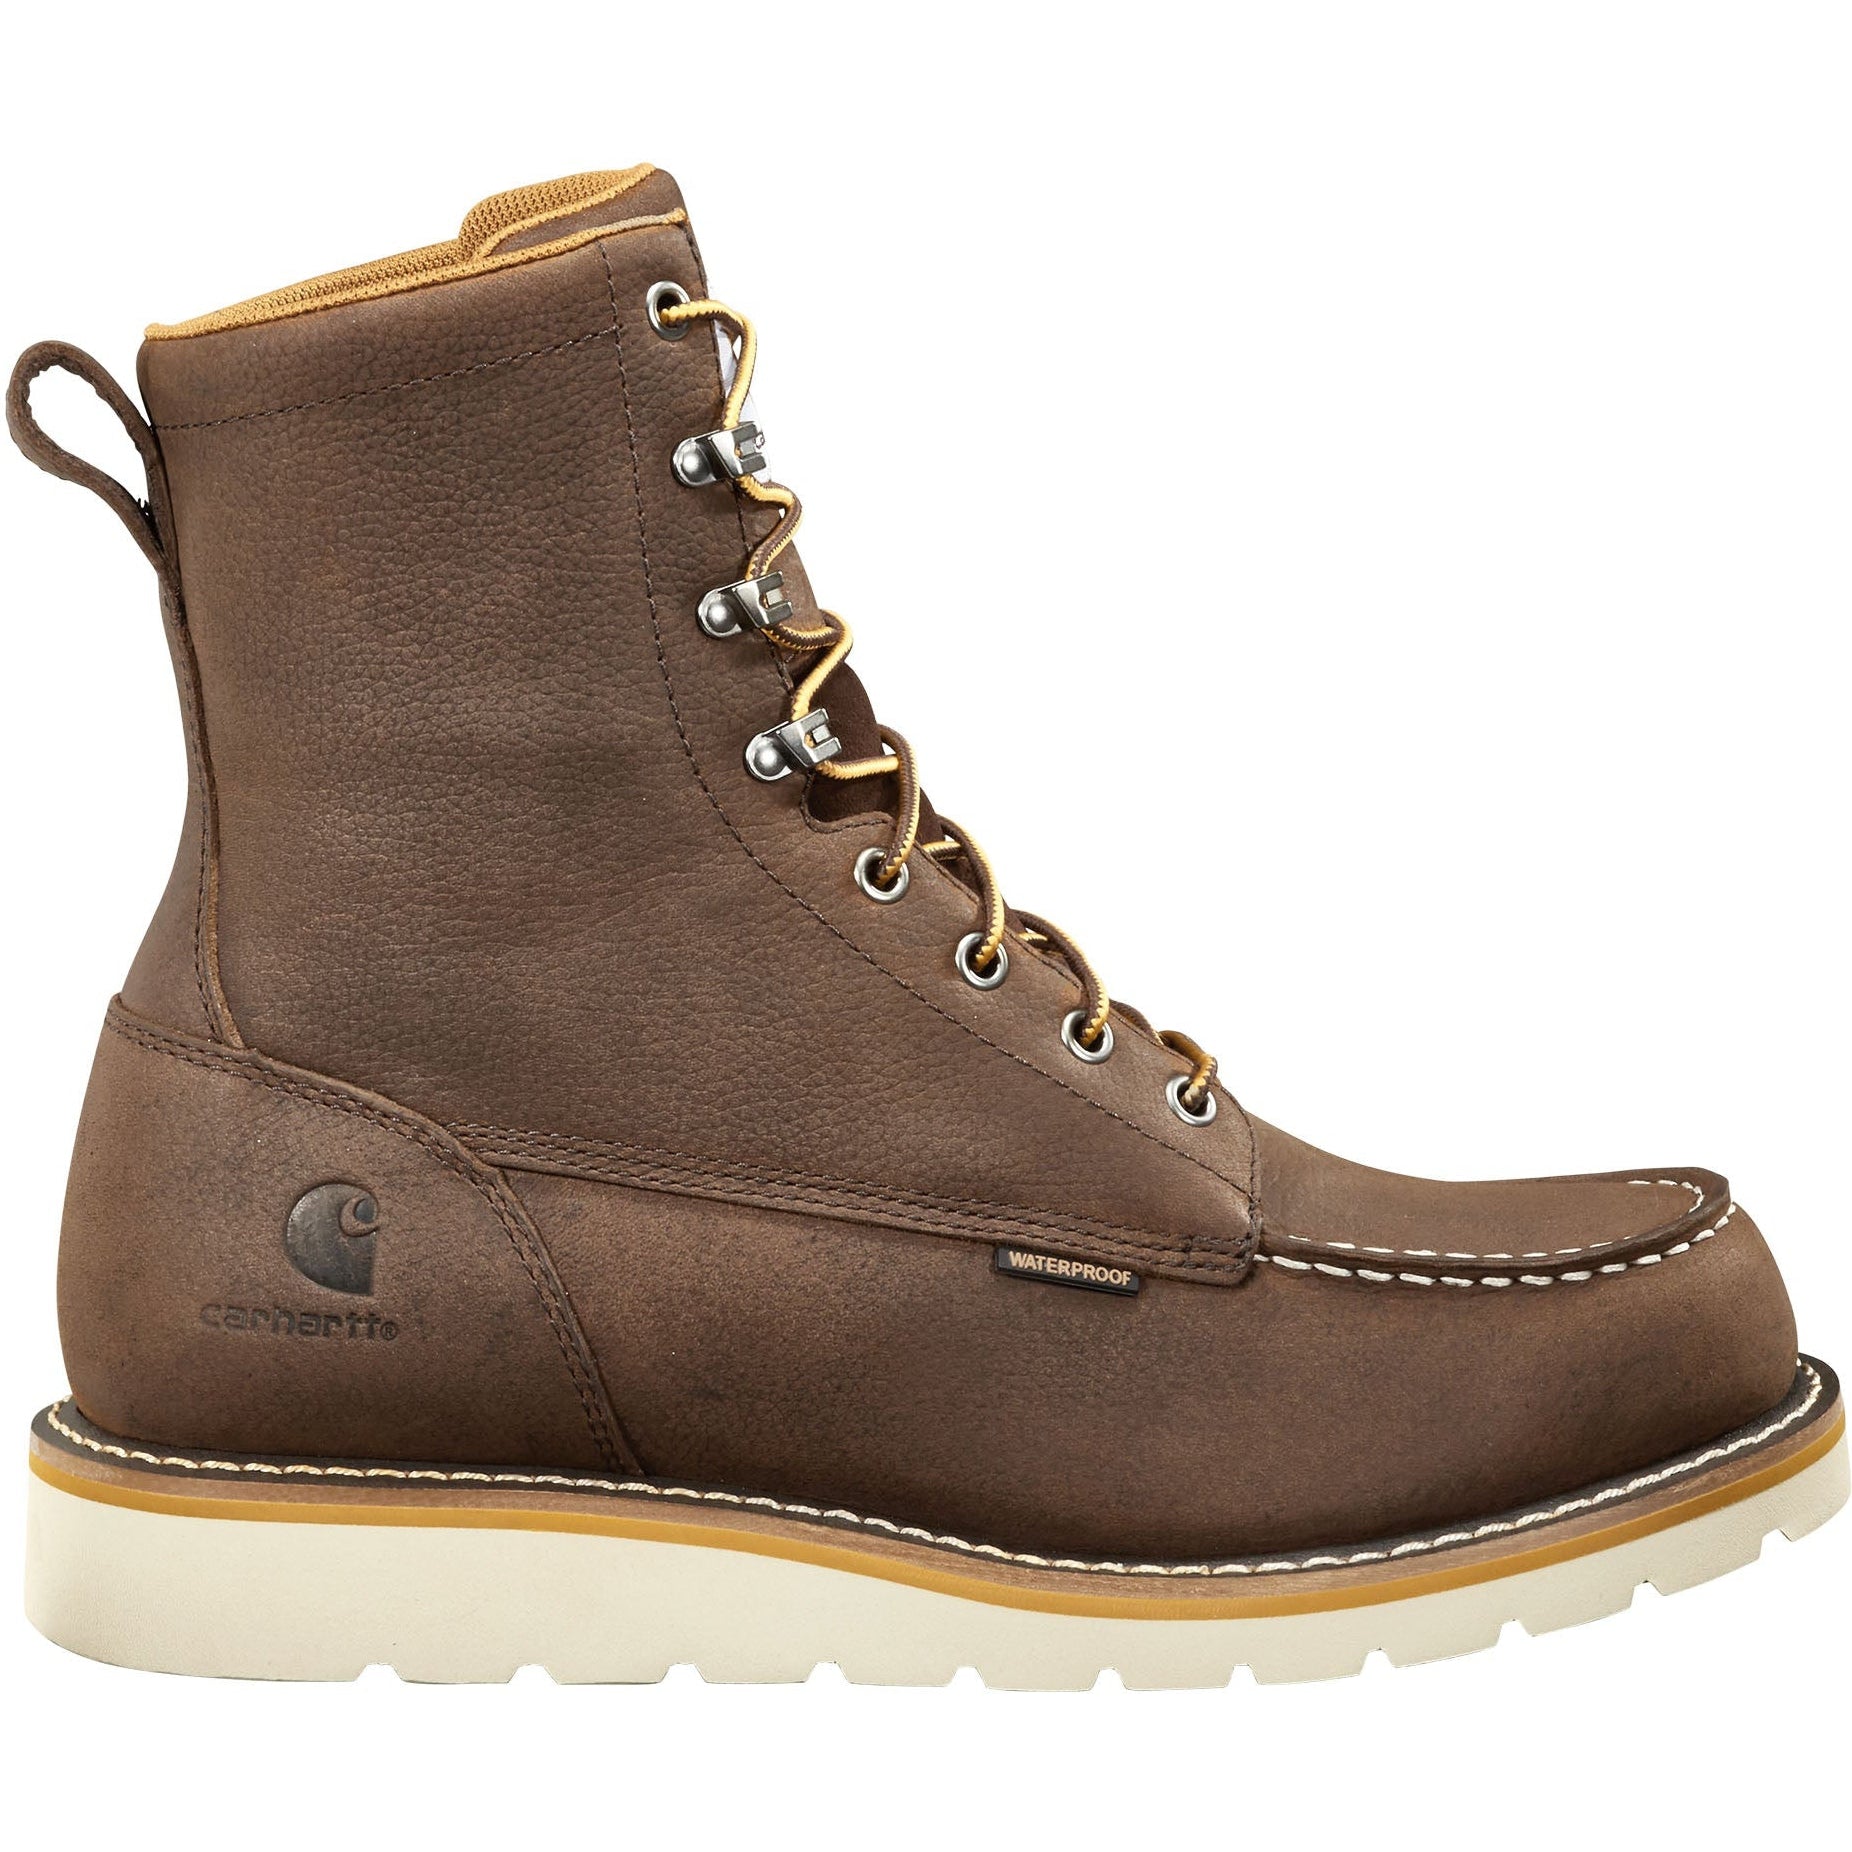 Carhartt Men's 8" WP Soft Toe Wedge Work Boot - Dark Brown - FW8095-M 8 / Medium / Brown - Overlook Boots